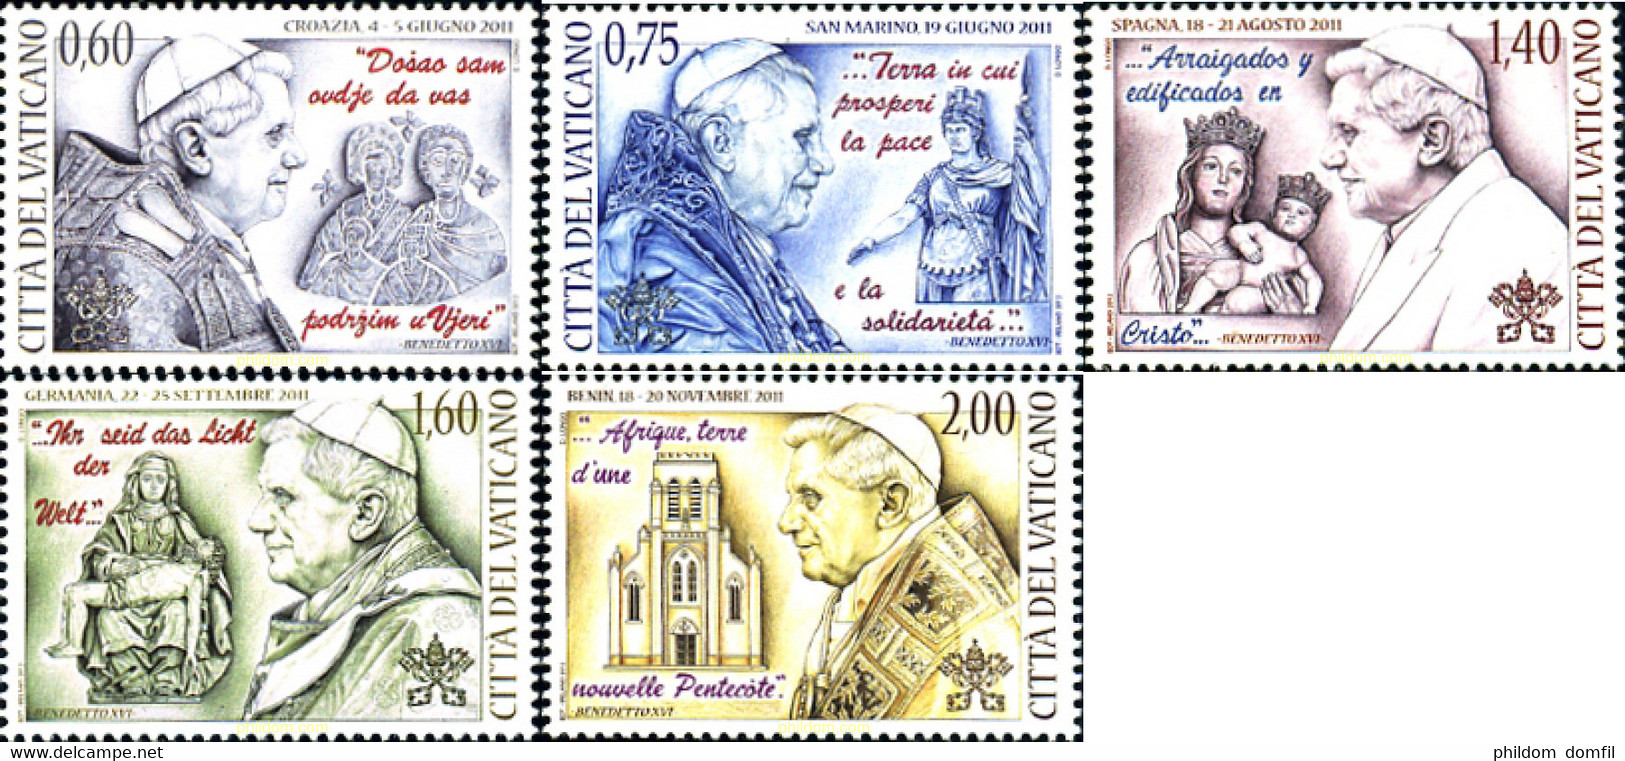 296437 MNH VATICANO 2012 VIAJES DEL PAPA EN 2012 - Used Stamps